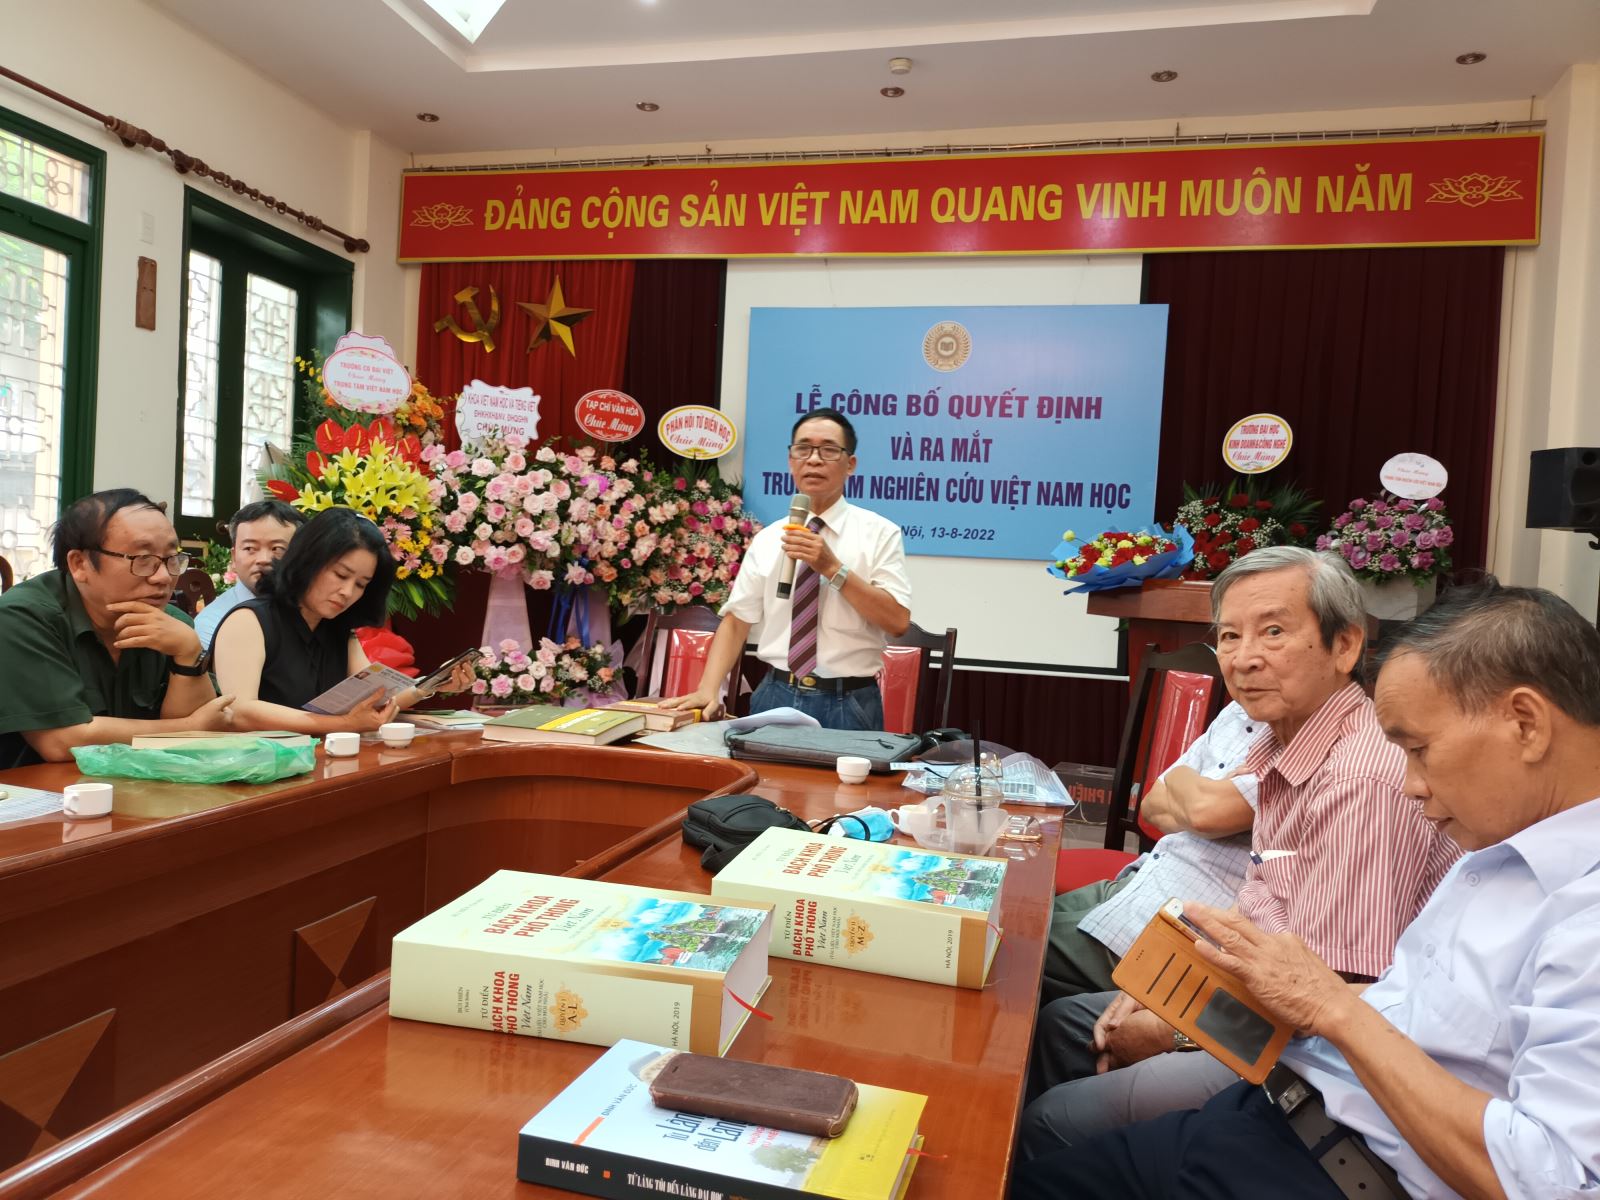 Ra mắt Trung tâm Nghiên cứu Việt Nam học